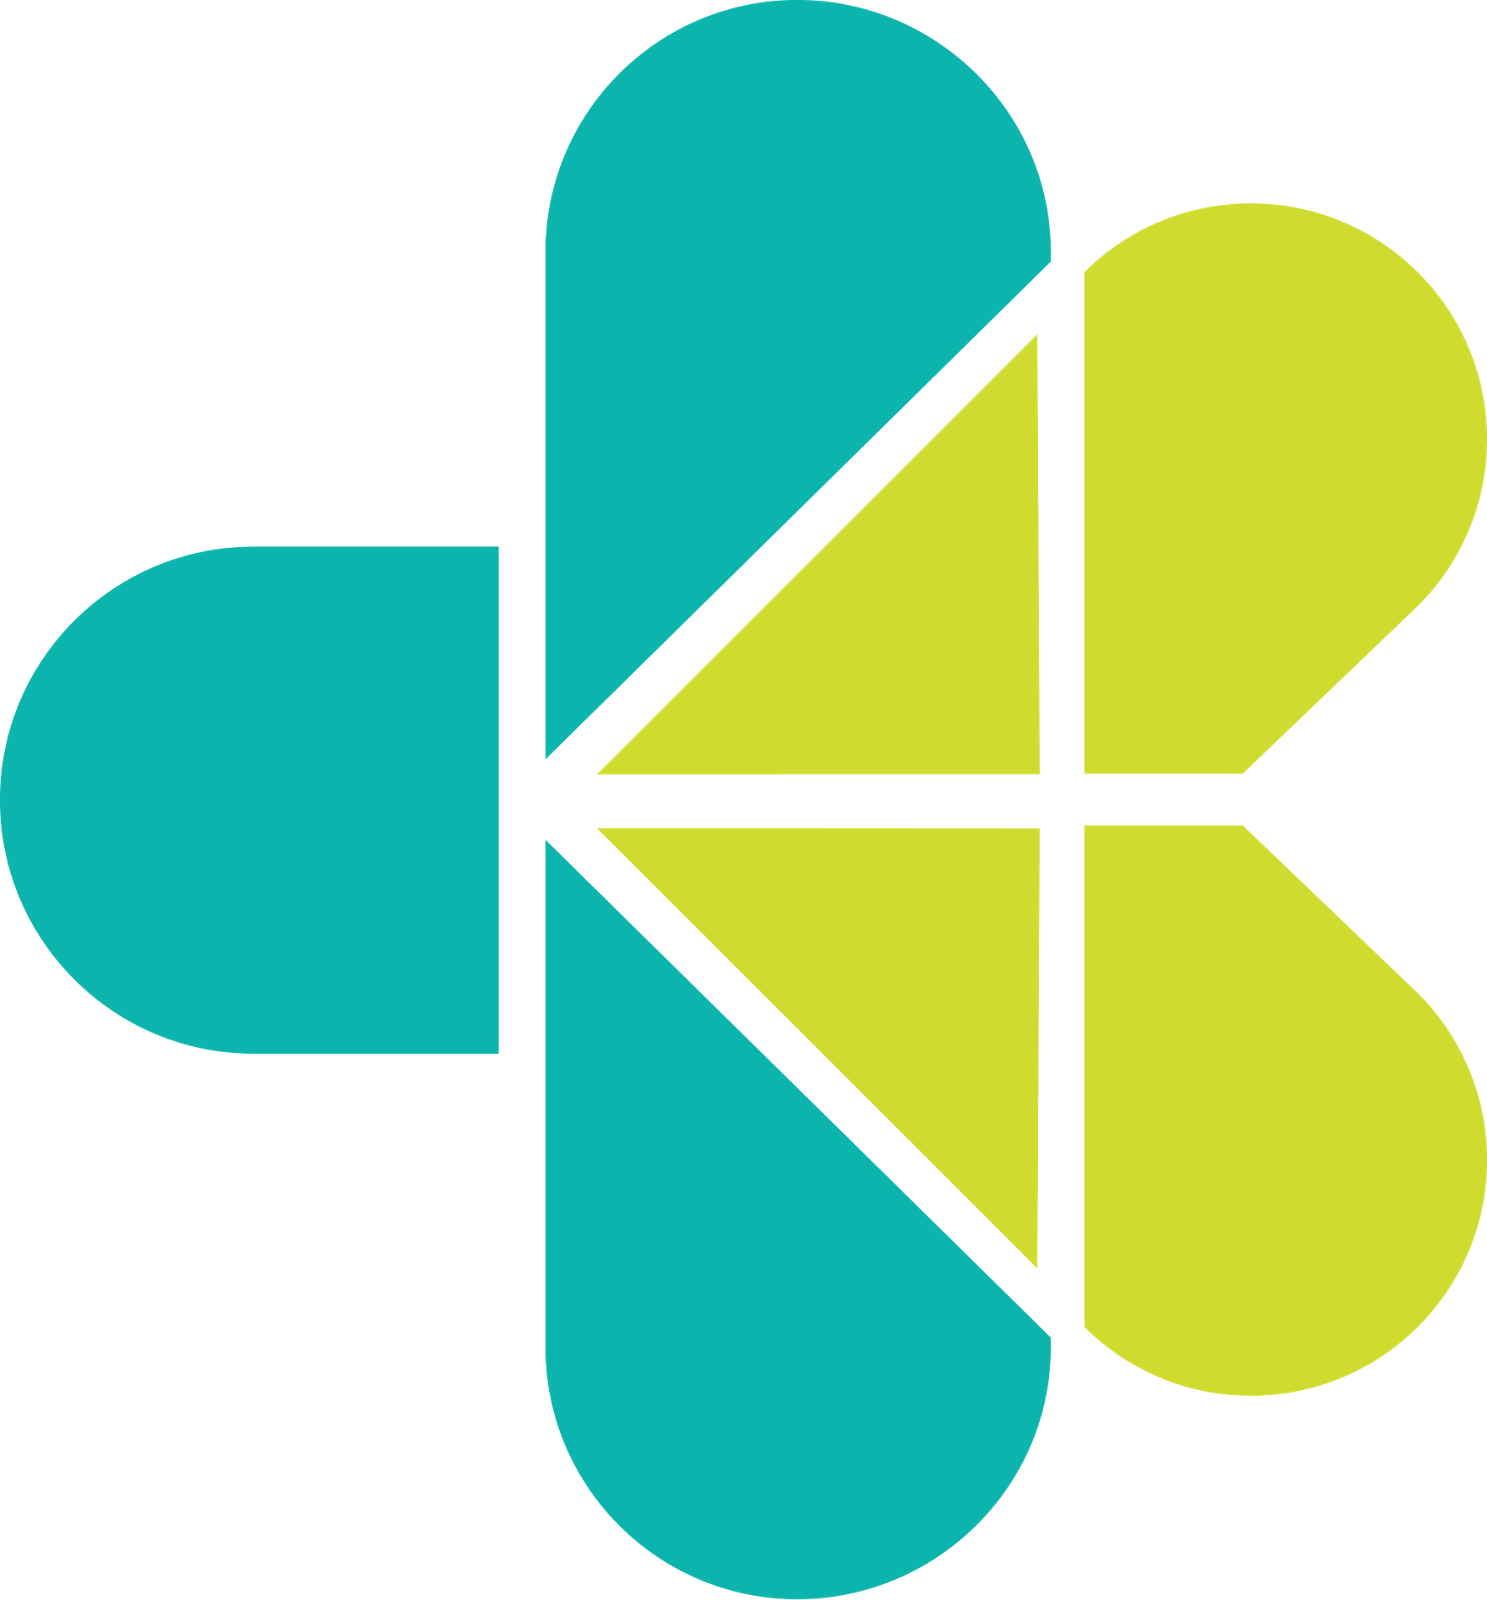 25. Logo Kementerian Kesehatan RI, https://bingkaiguru.blogspot.com